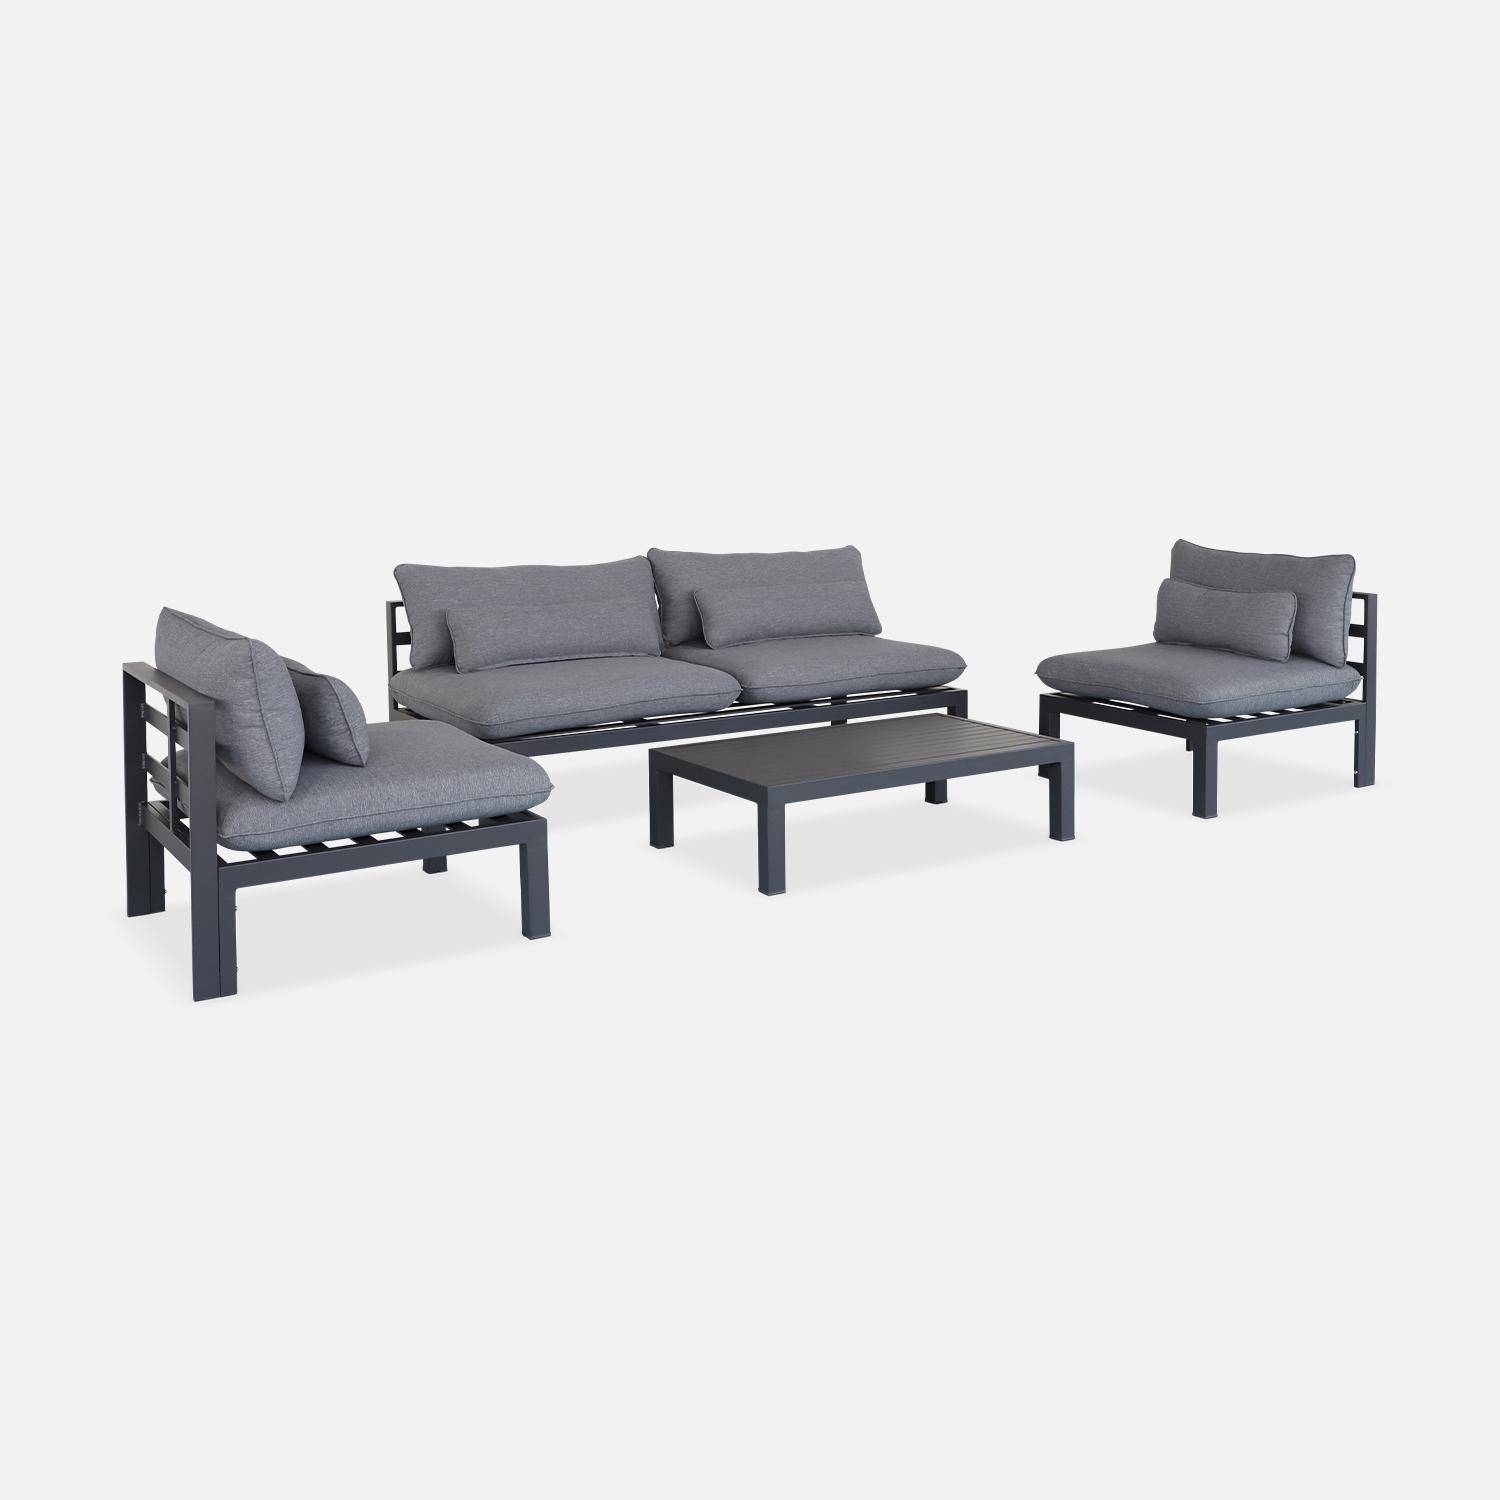 Conjunto de muebles de jardín de aluminio 4 plazas - asientos profundos - Rieti - gris antracita Photo4